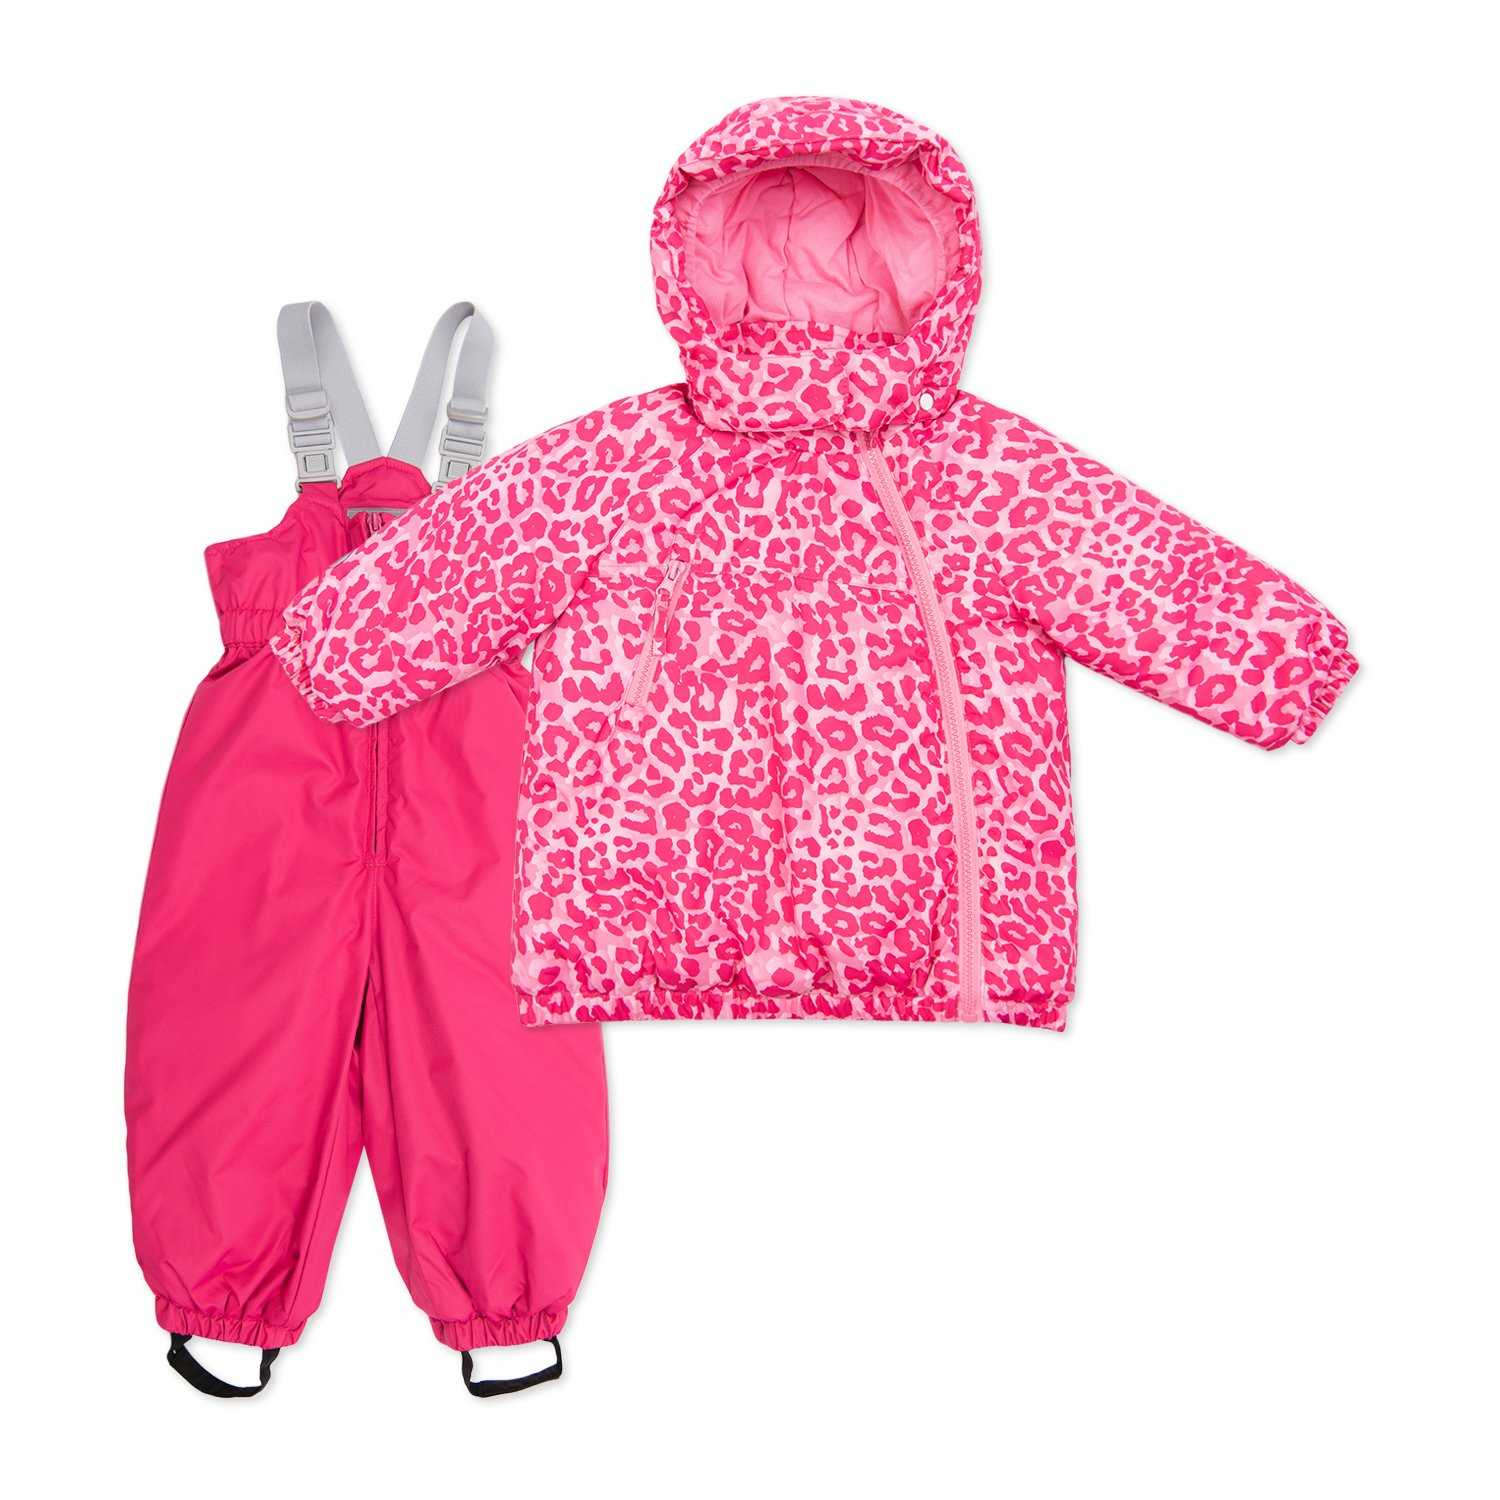 Детская одежда Tokka Tribe популярного финского бренда имеет большую разнообразную гамму расцветок Можно ли найти ярко-розовые модели для девочек Выбираем качественные зимние комбинезоны, куртки и шапки для мальчиков